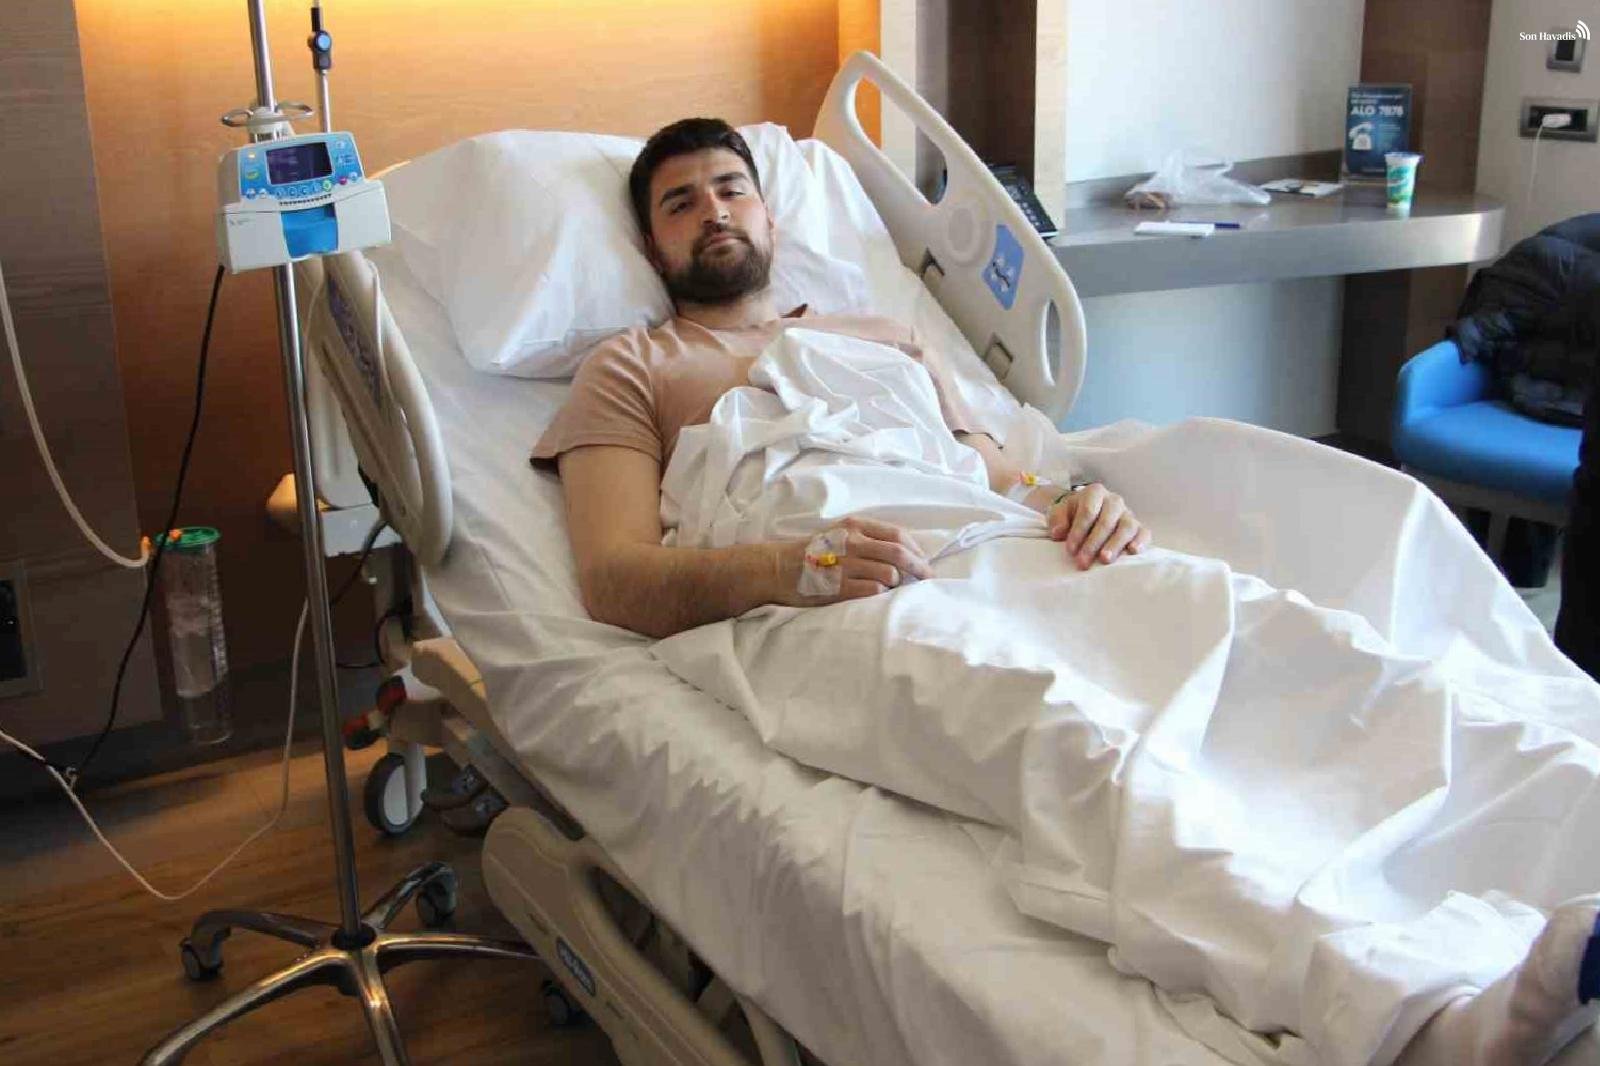 Beşiktaş'ın kalecisi Ersin Destanoğlu, akut apandisit teşhisi konularak ameliyat edildi.